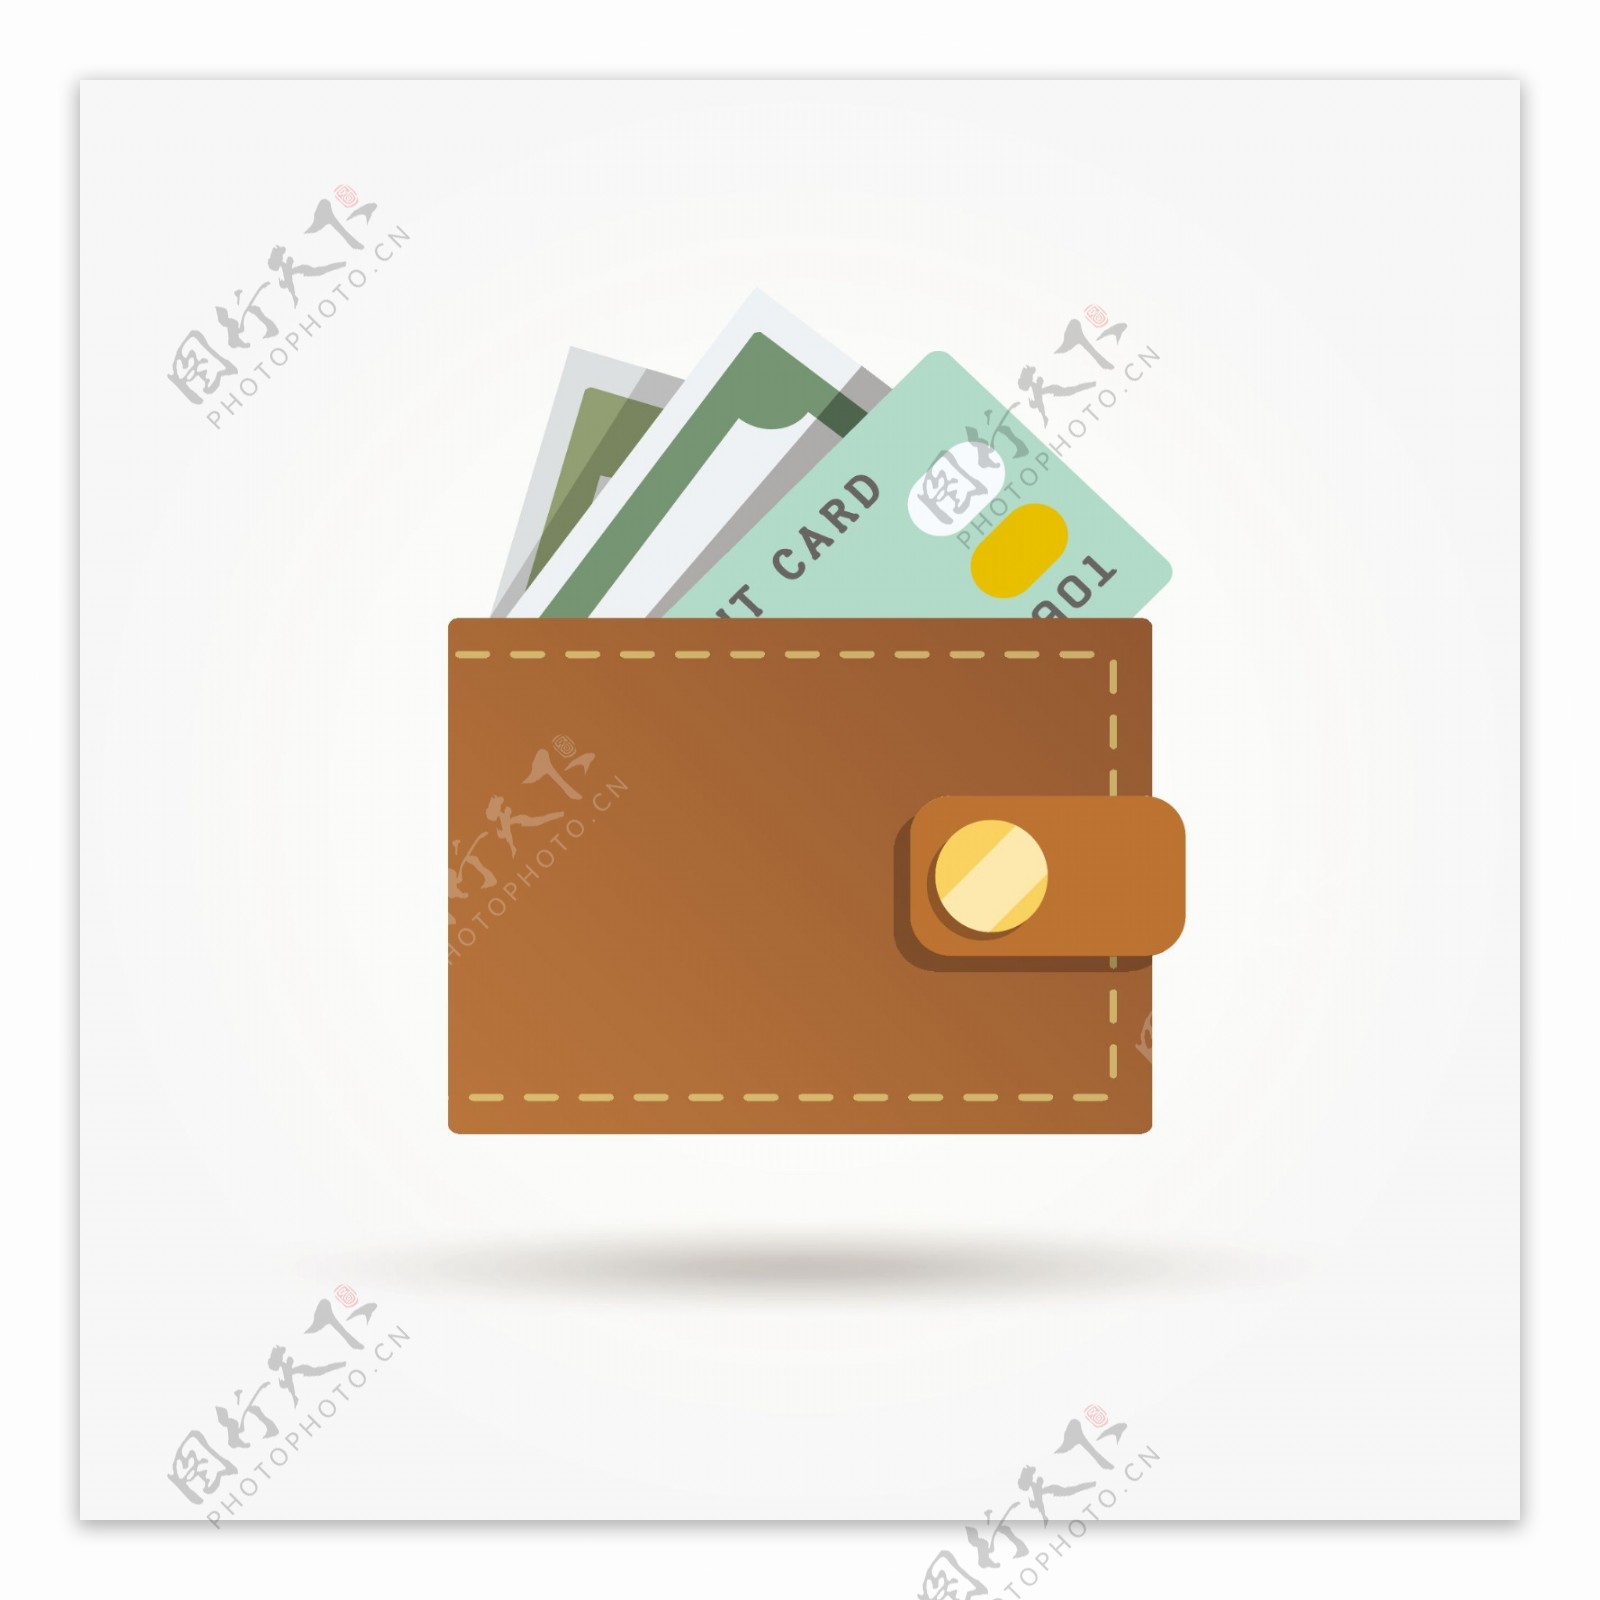 在平面设计账单和信用卡的钱包